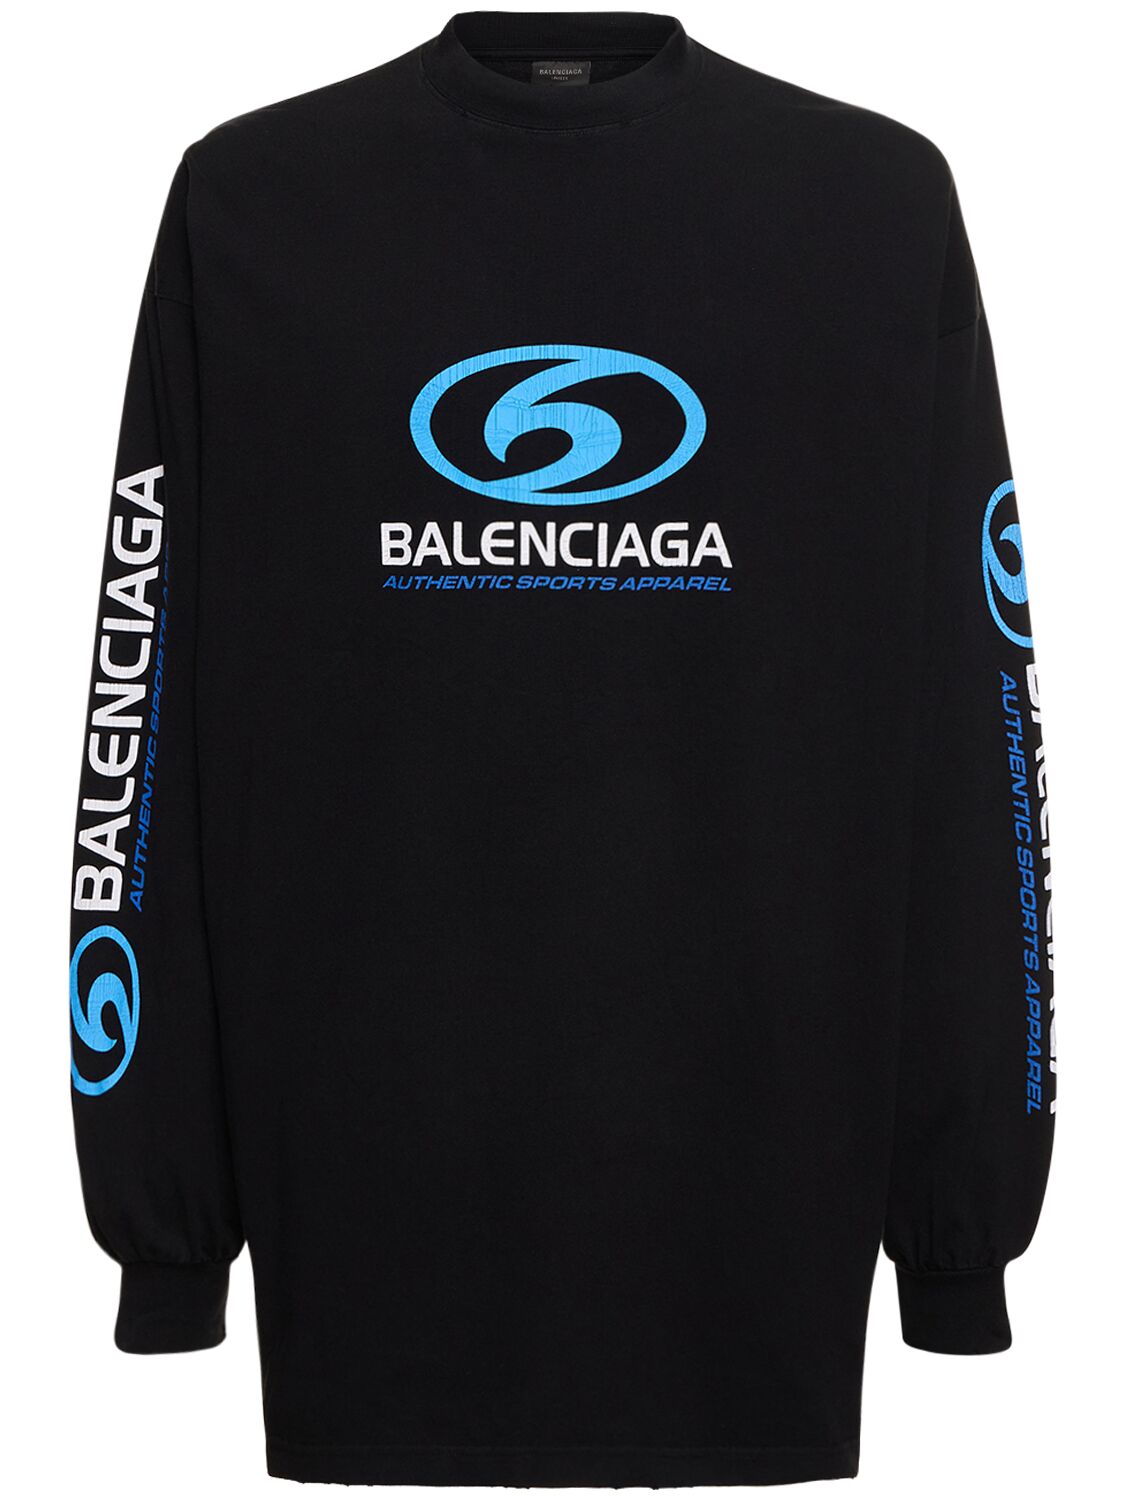 Balenciaga Surfer Cracked Vintage Cotton T-shirt In Schwarz,blau